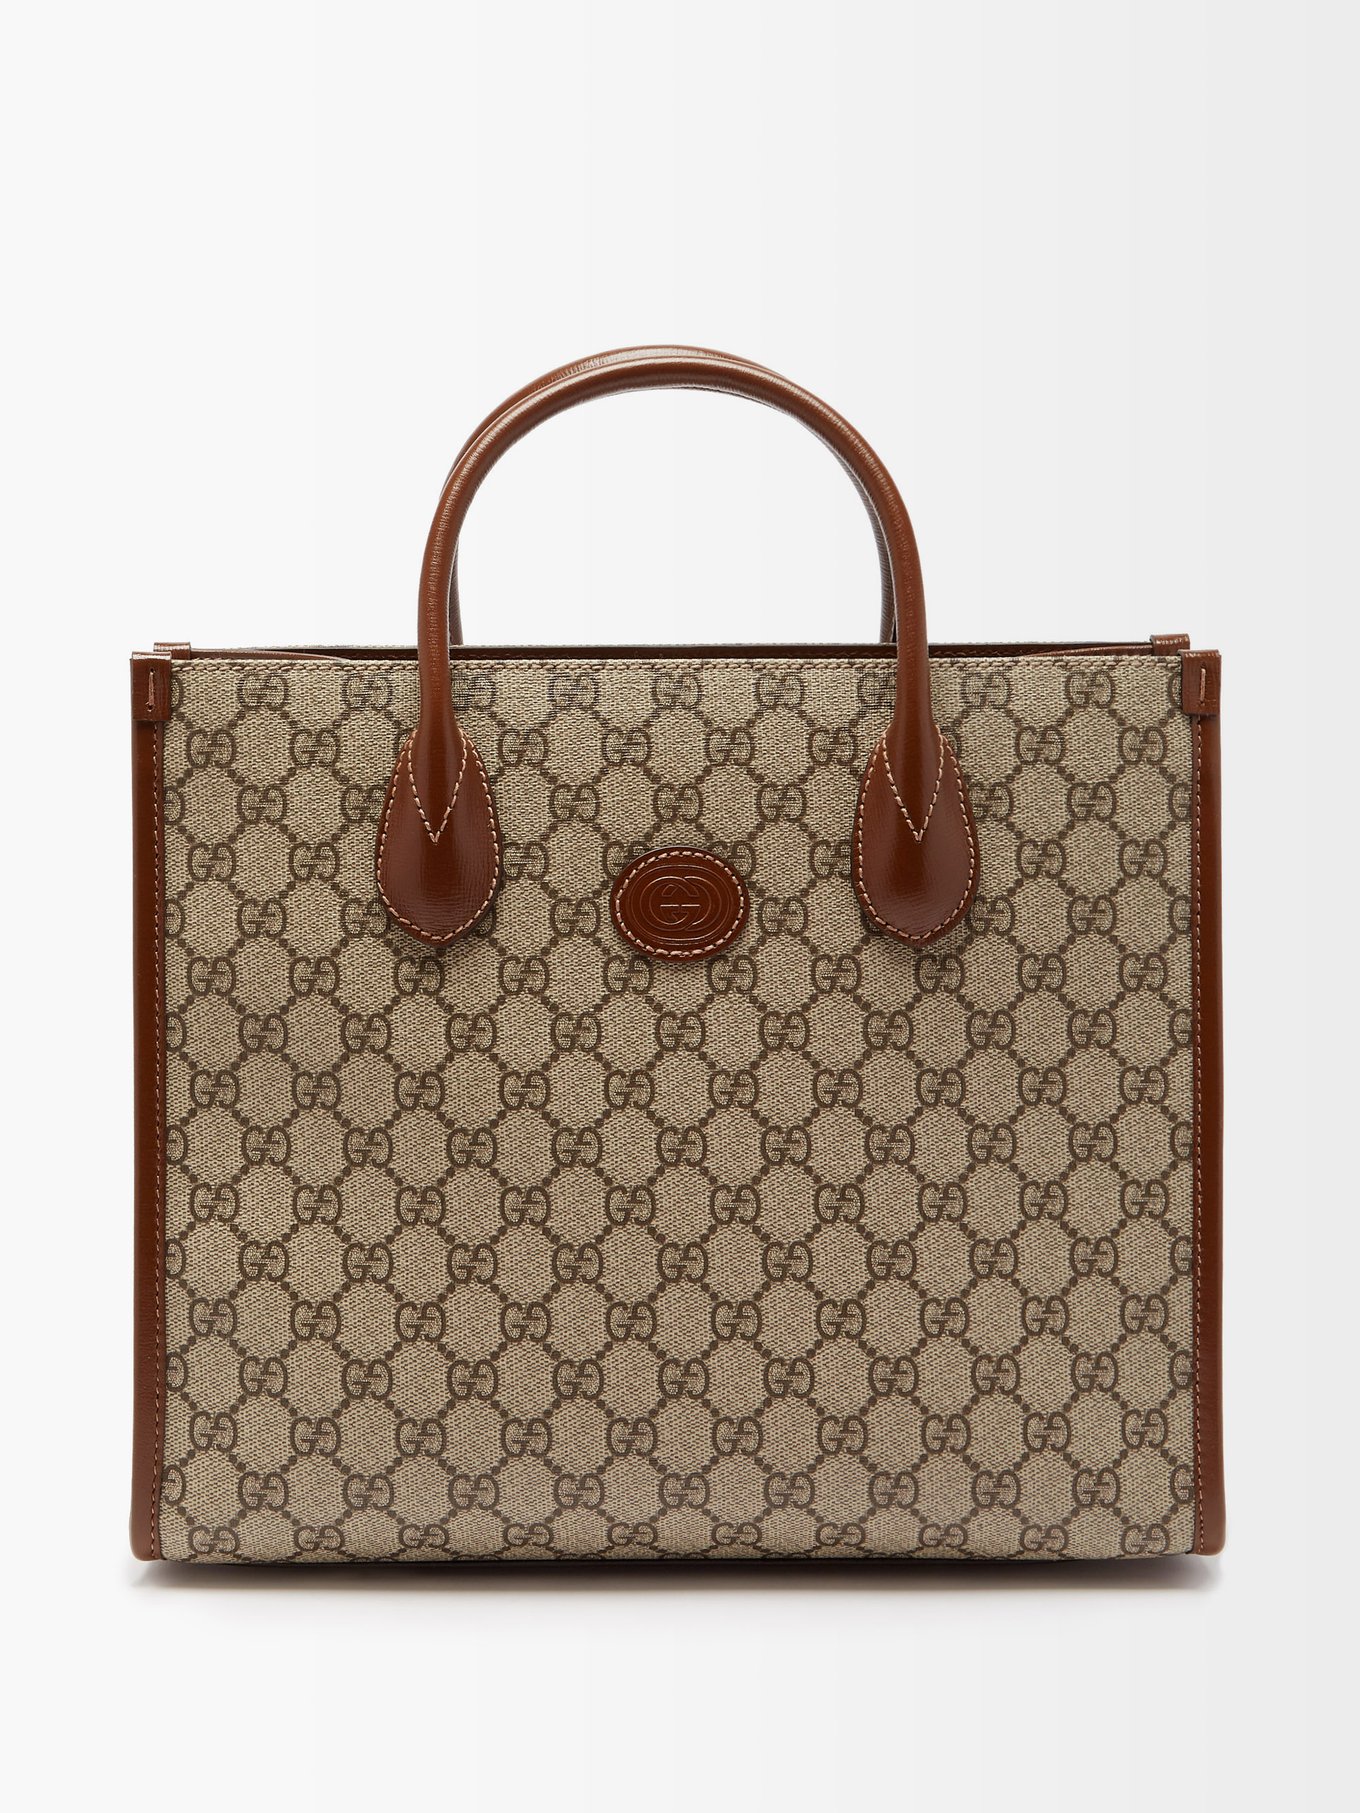 Gucci, GG Supreme Small Tote Bag